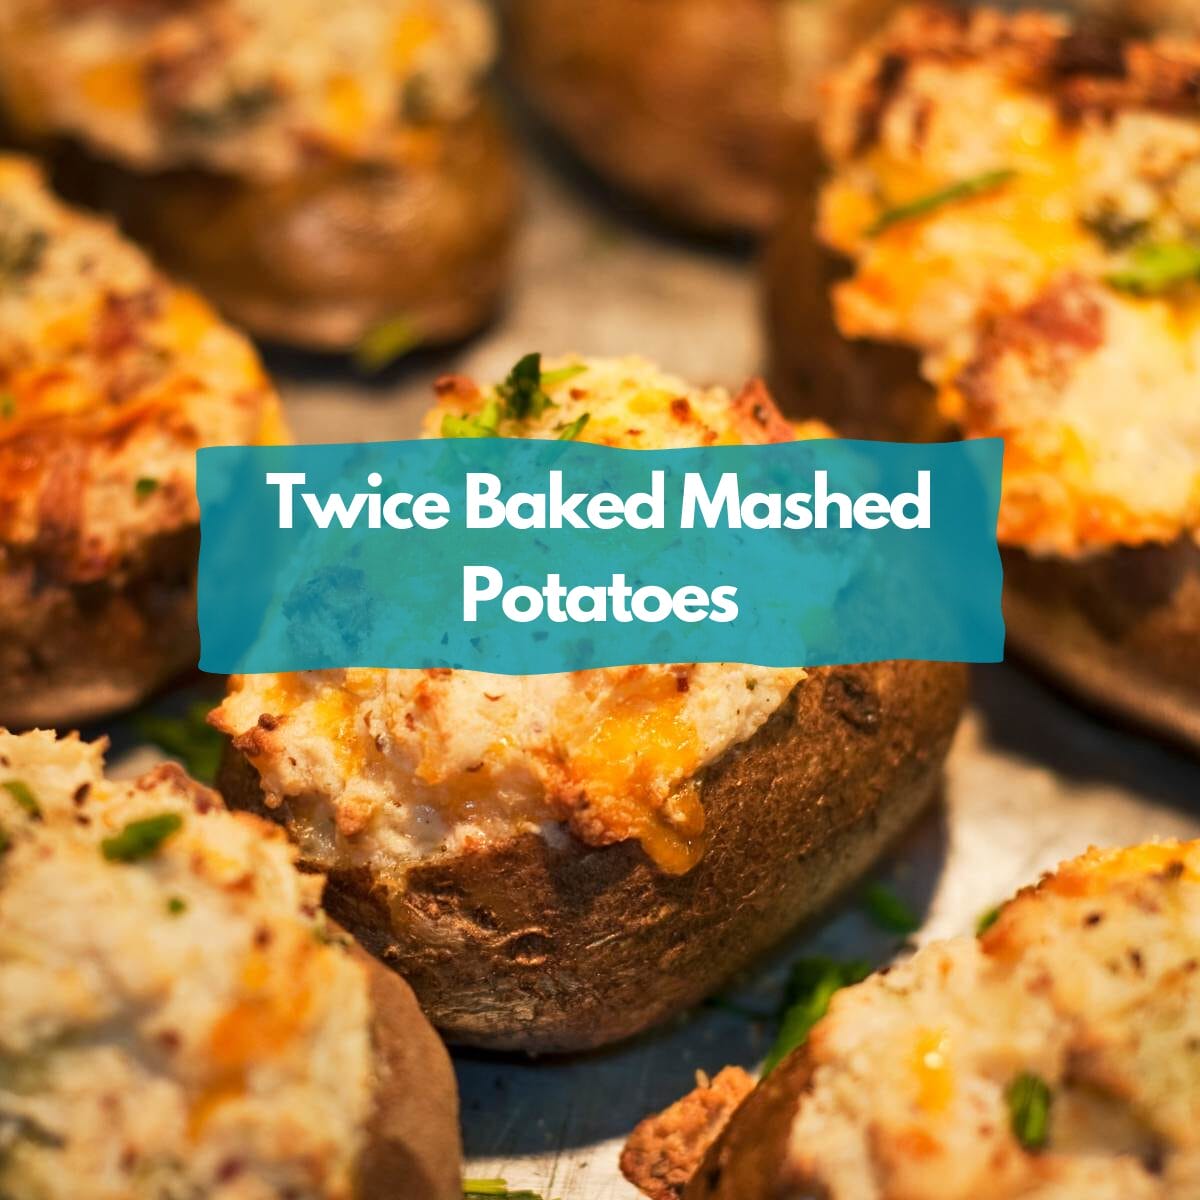 Twice baked mashed potatoes